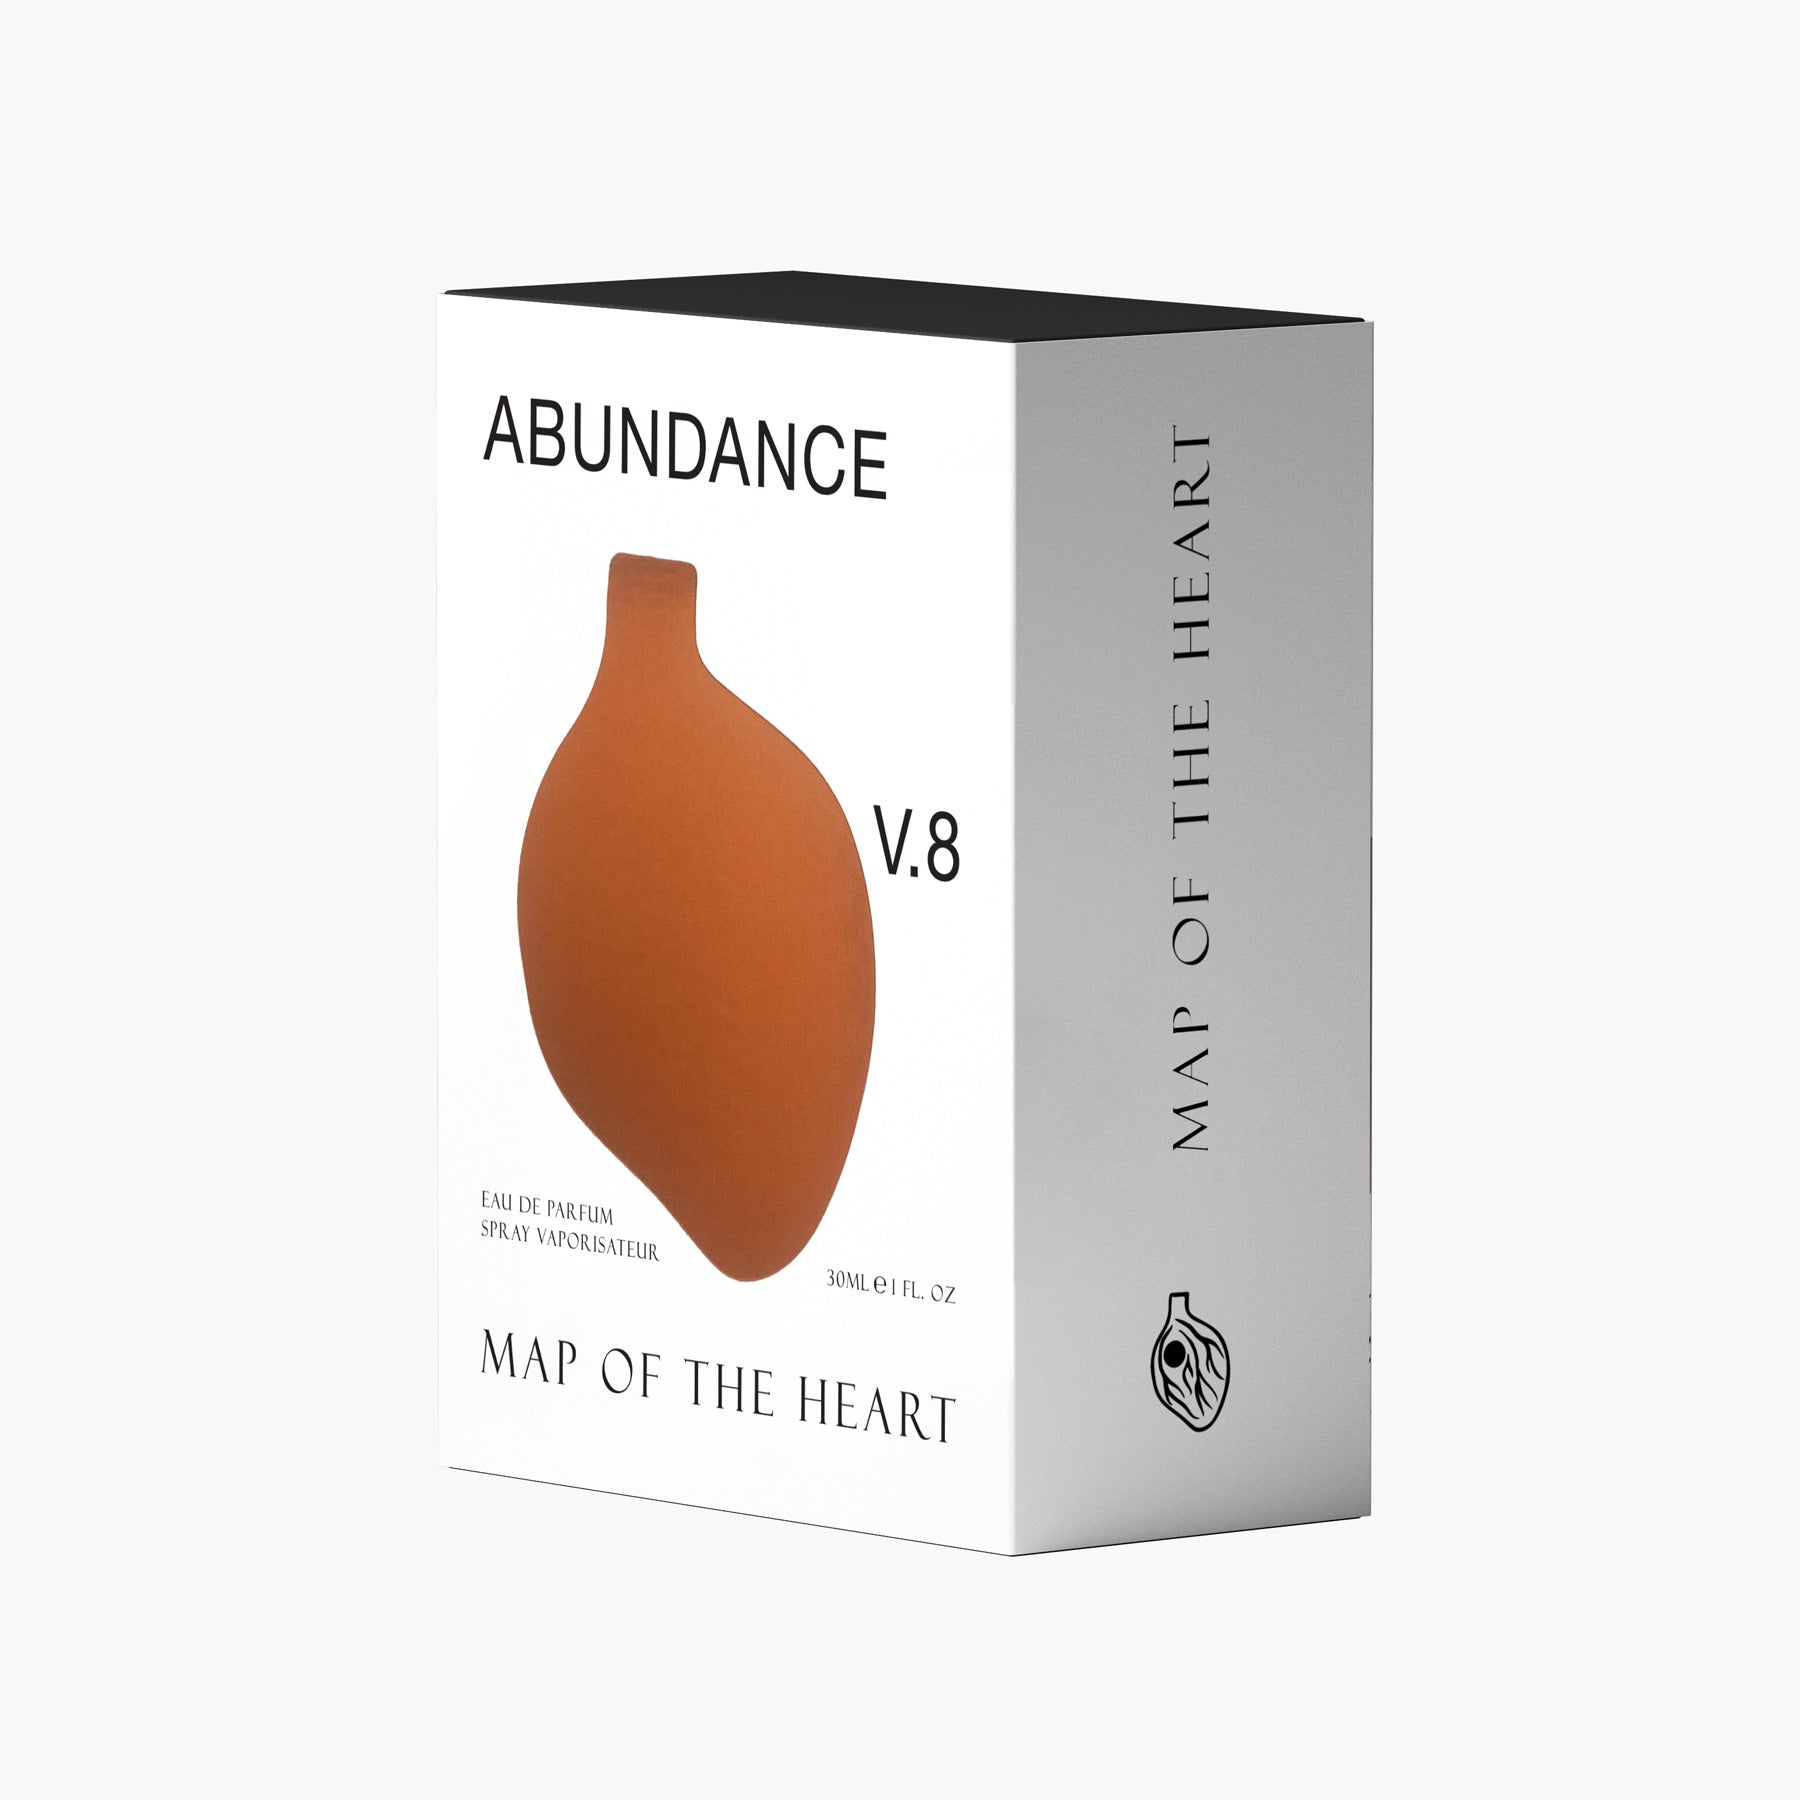 Map of the Heart Abundance V.8 30ml eau de parfum